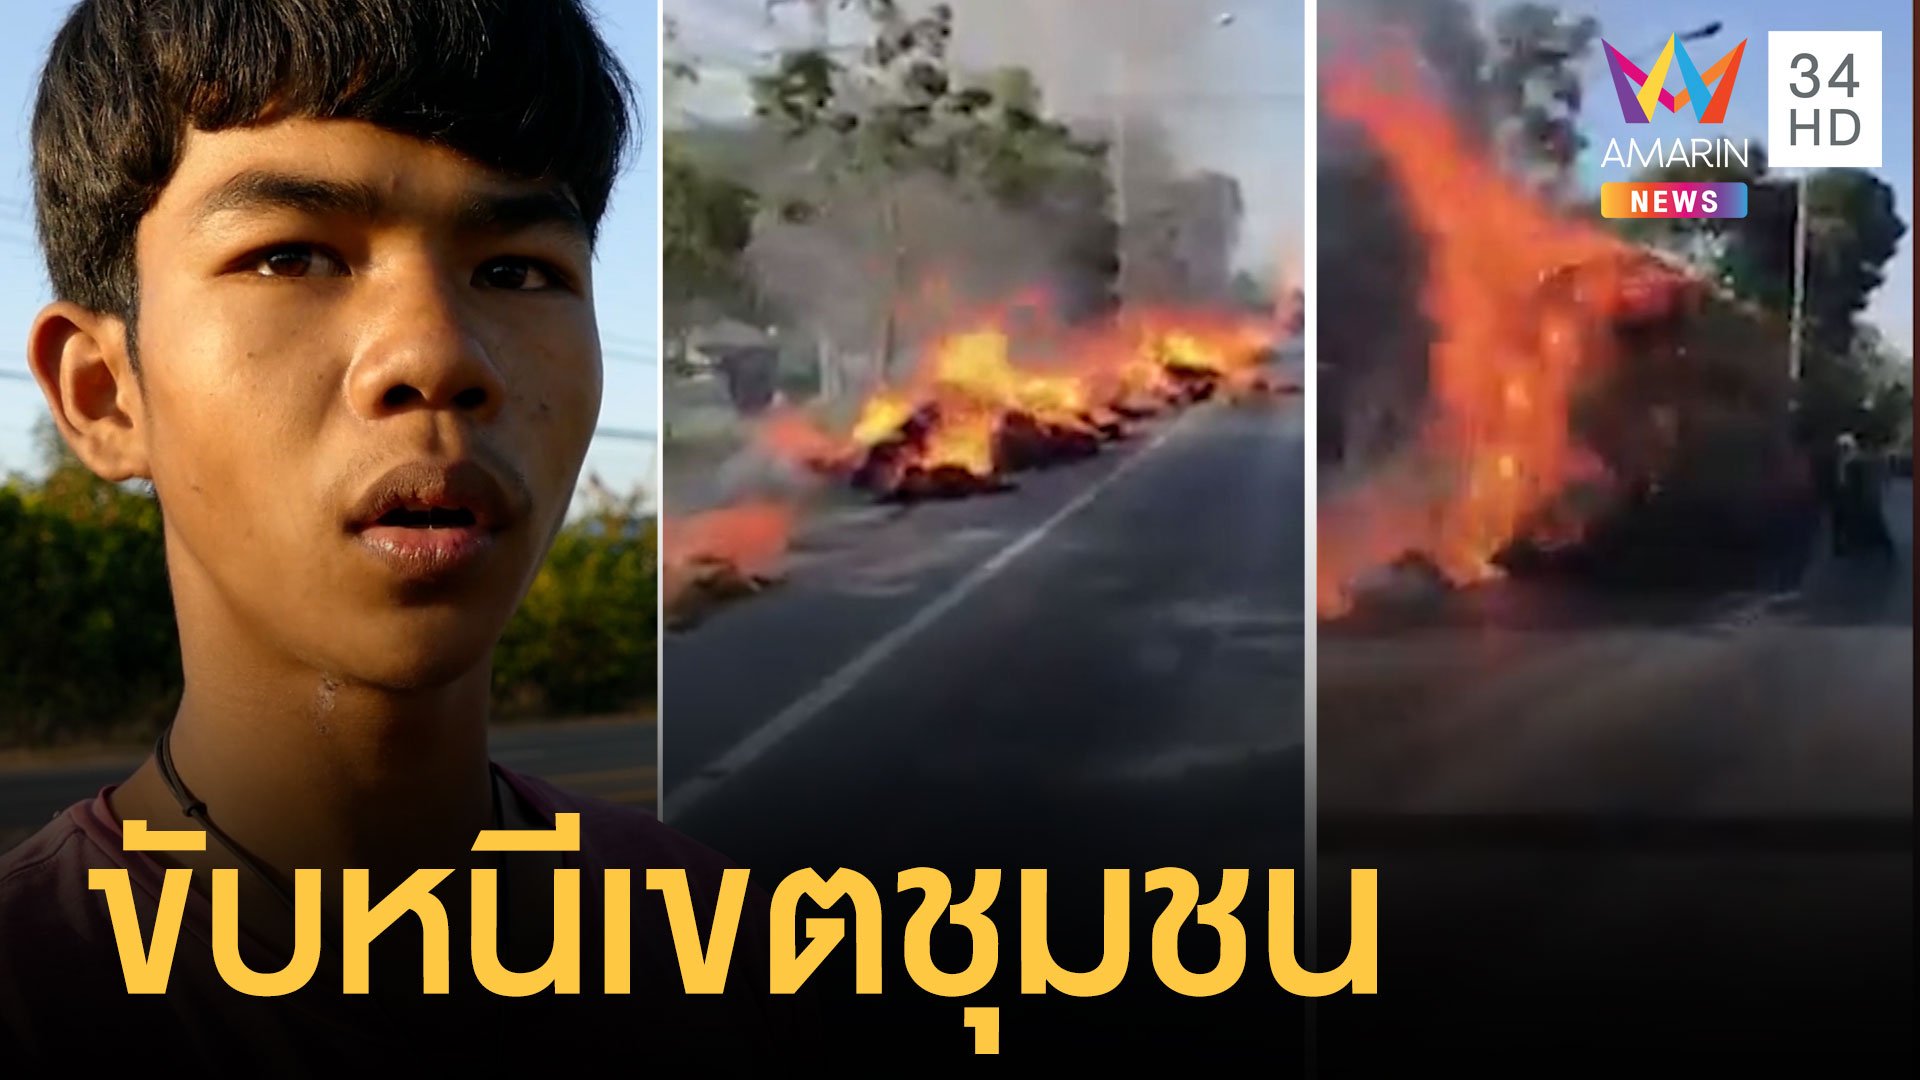 ระทึก! ไฟไหม้รถบรรทุกฟางลากยาวเป็นกิโล | ข่าวอรุณอมรินทร์ | 14 ม.ค. 64 | AMARIN TVHD34